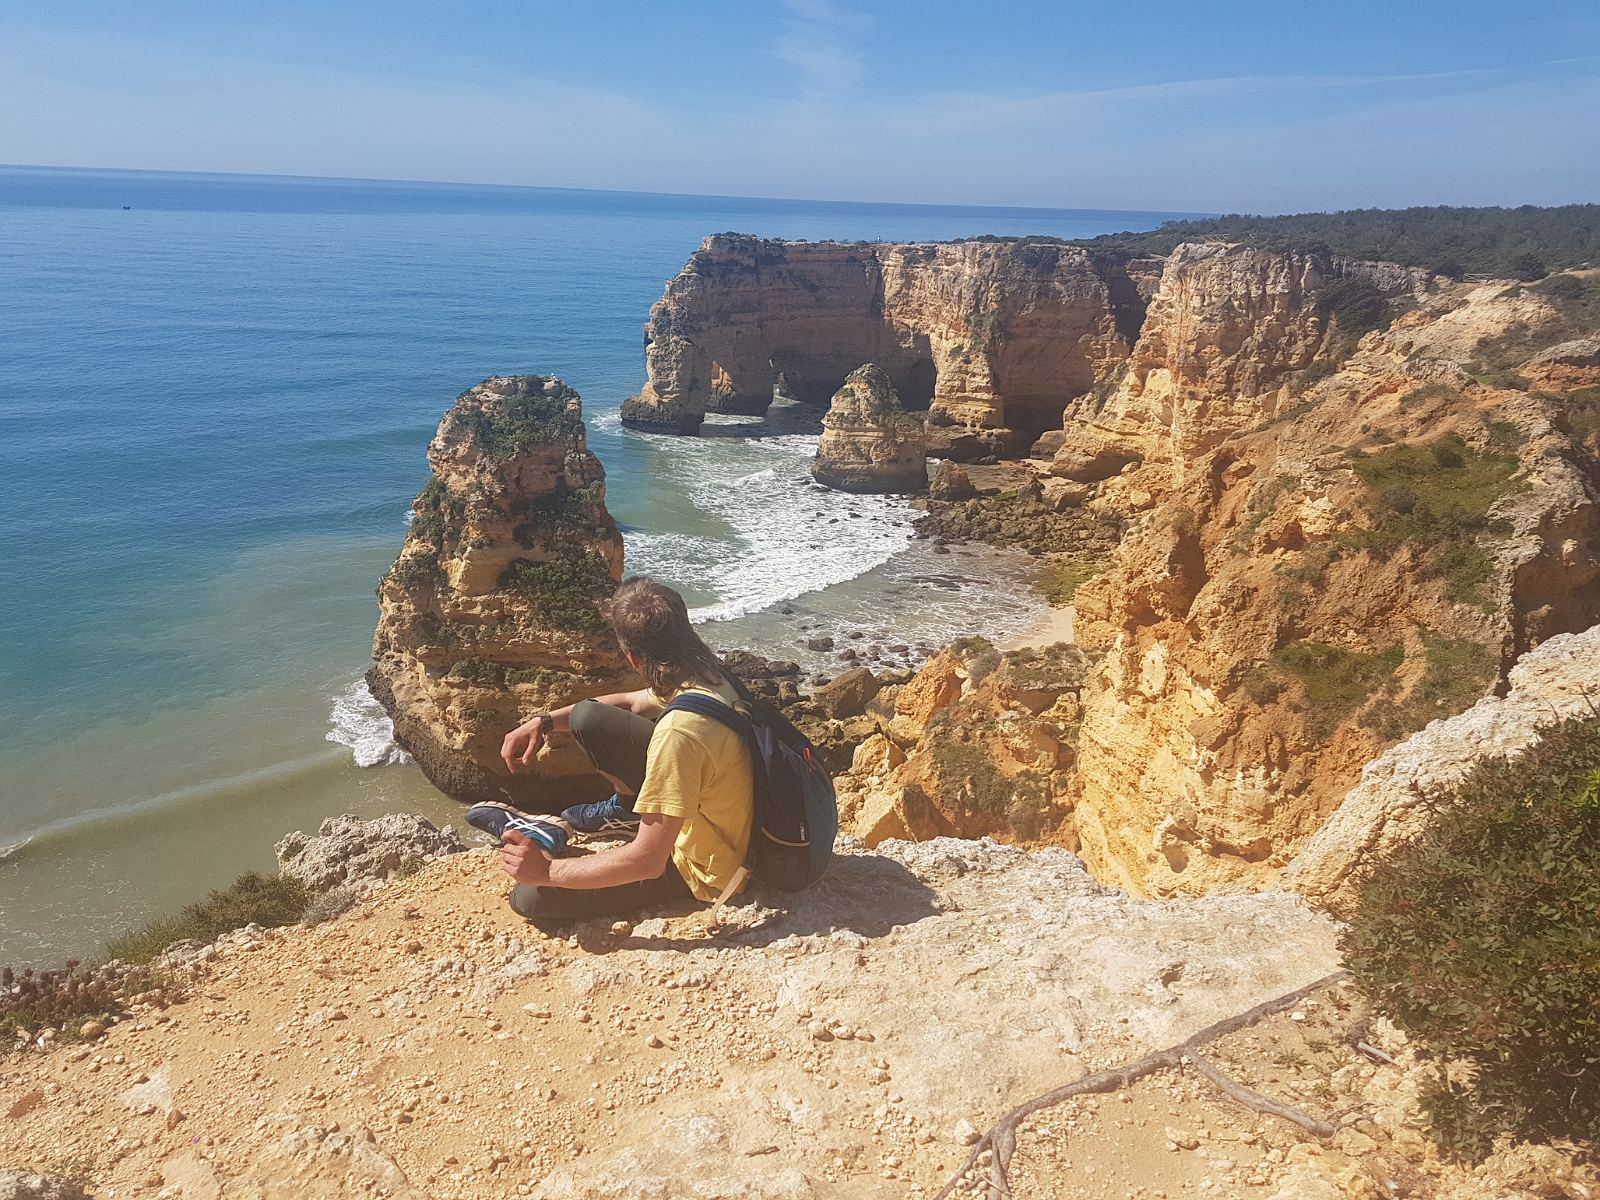 16. Niesamowite formacje skalne na wybrzeżu Oceanu Atlantyckiego w południowym regionie Portugalii - Algarve